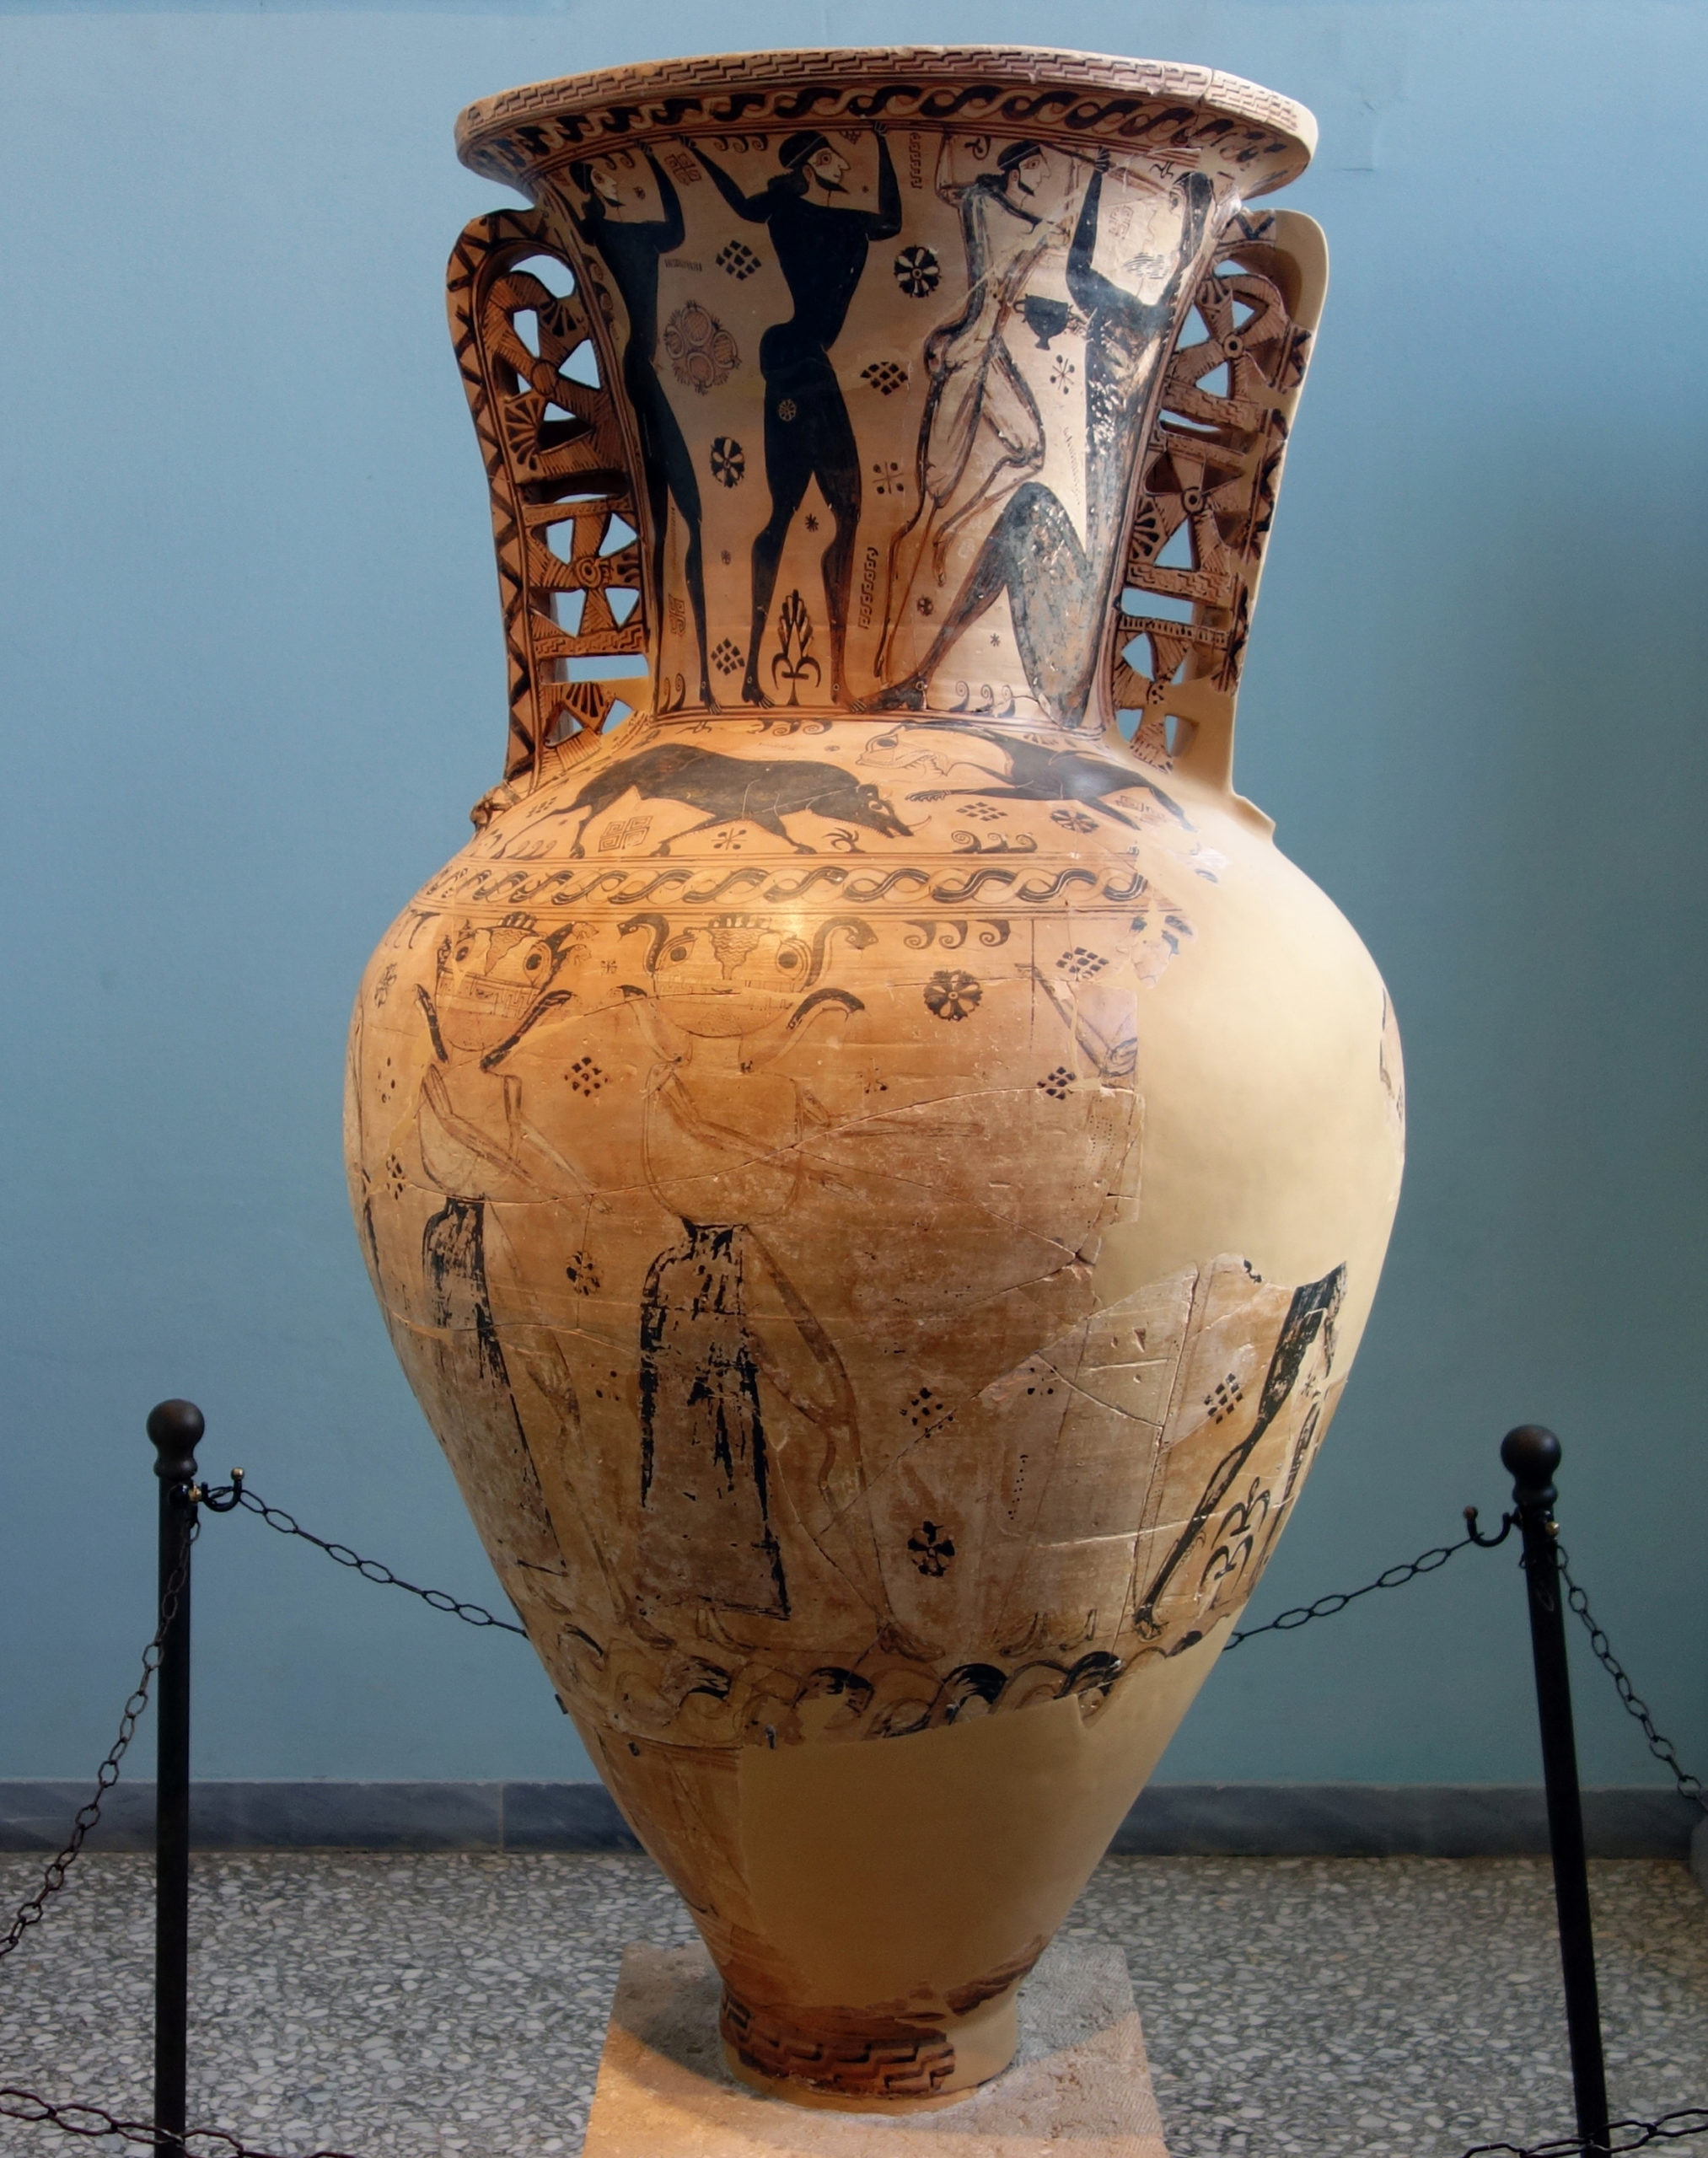 Eleusis Amphora (Proto-Attic neck amphora), 675-650 B.C.E., terracotta, 142.3 cm high (Eleusis Archeological Museum, Greece)